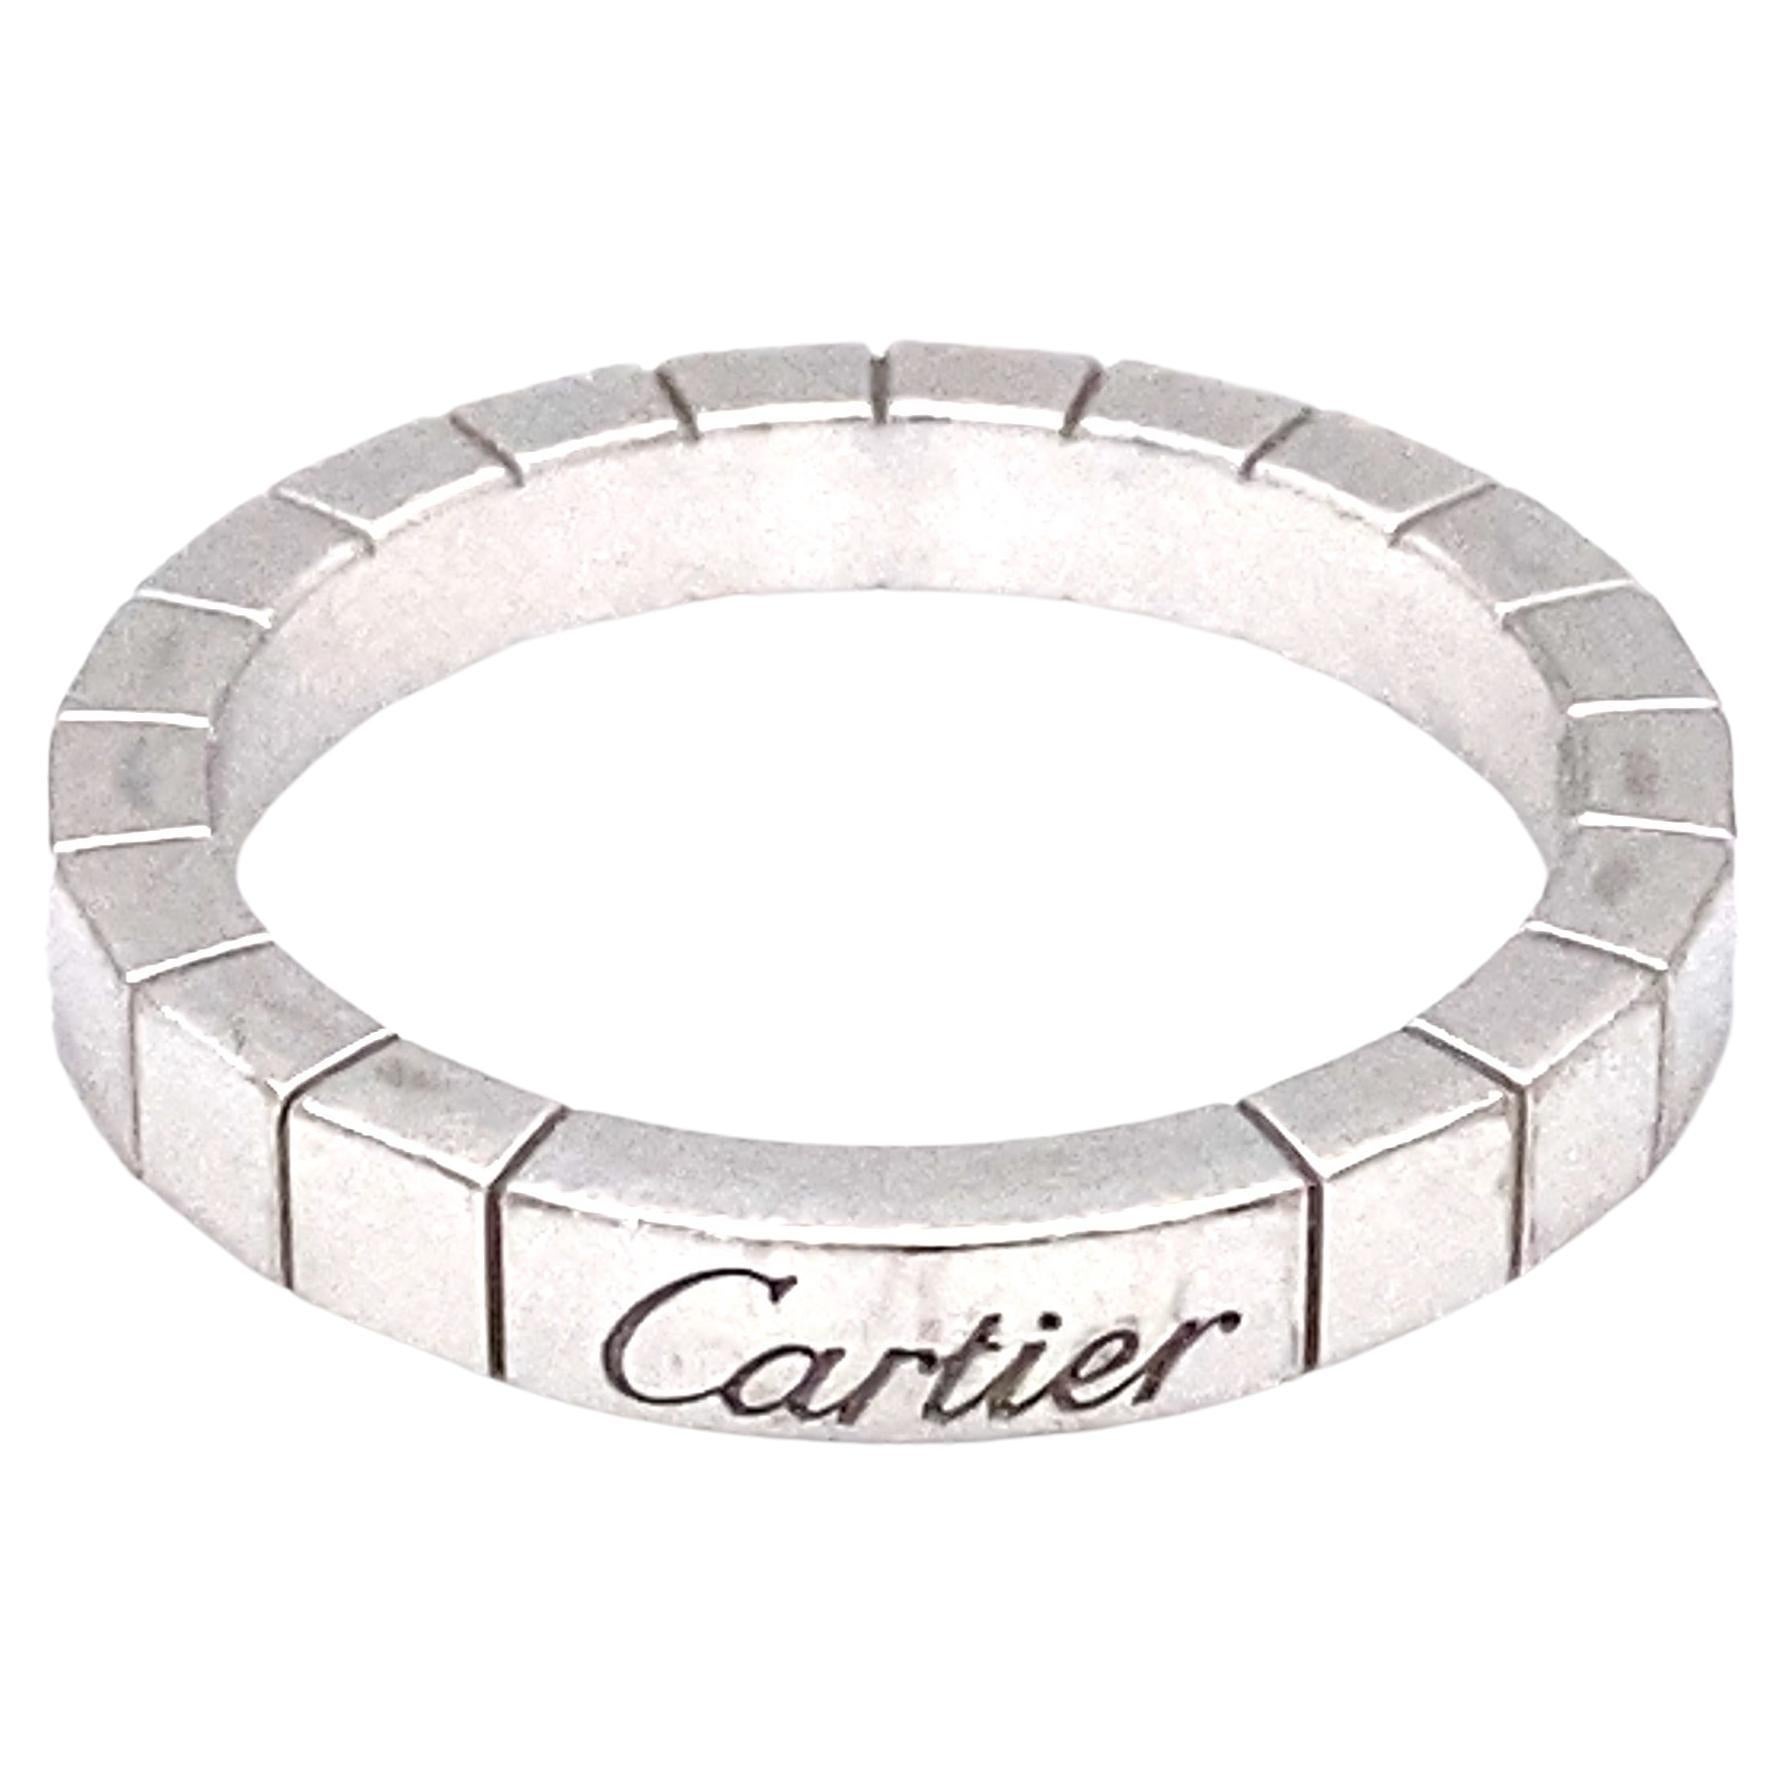 2000s Cartier Lanières Band Ring in 18 Karat White Gold